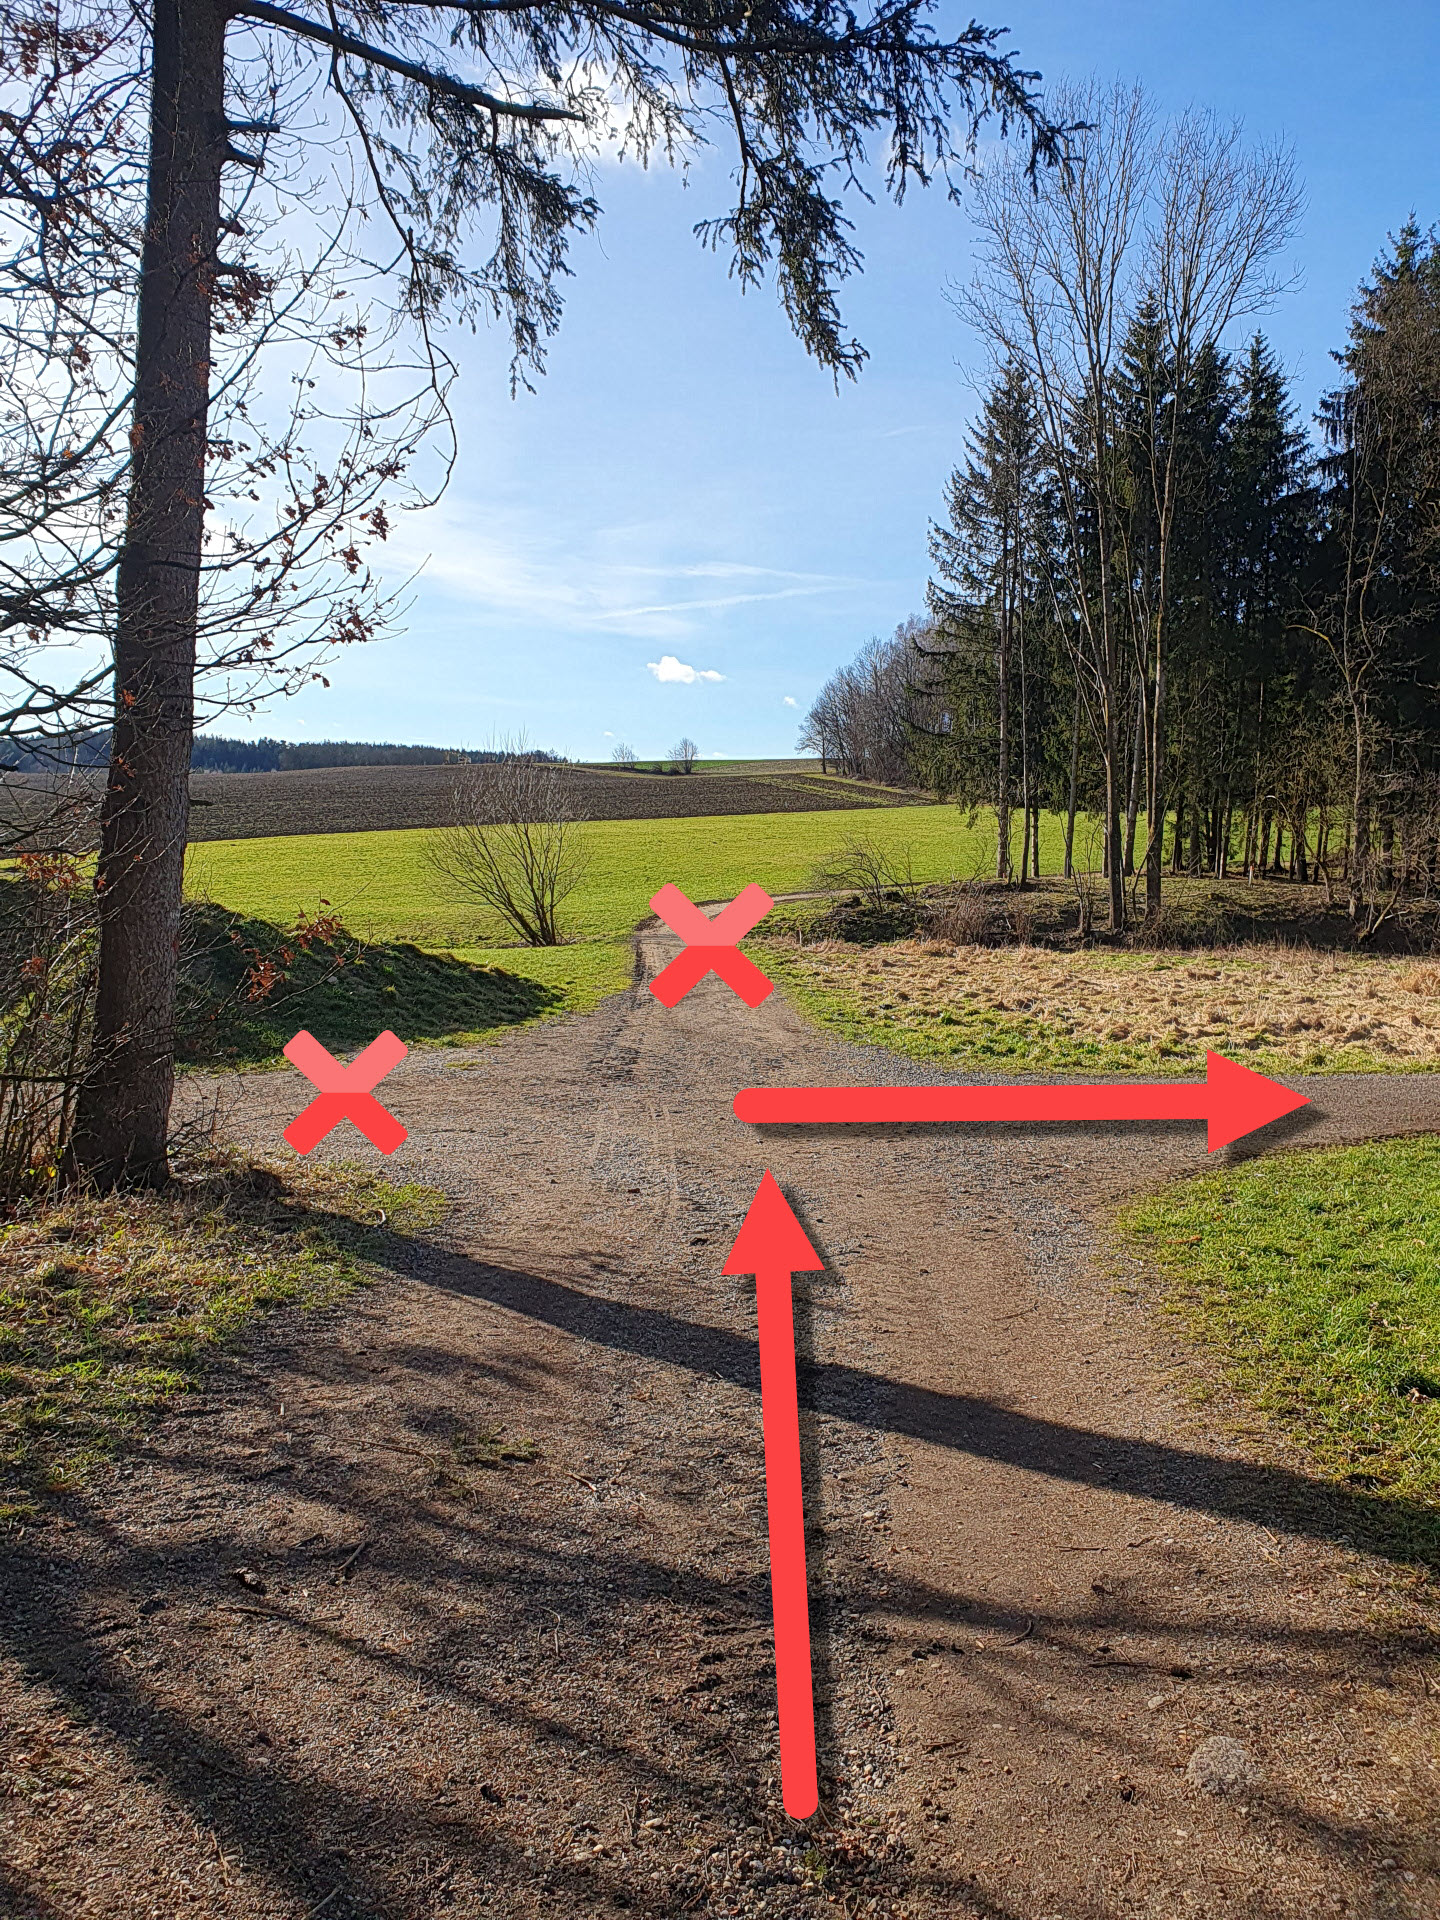 Foto der Kreuzung auf dem Weg zum Zwergerlwald in Taufkirchen kurz vor dem eigentlichen Wald.